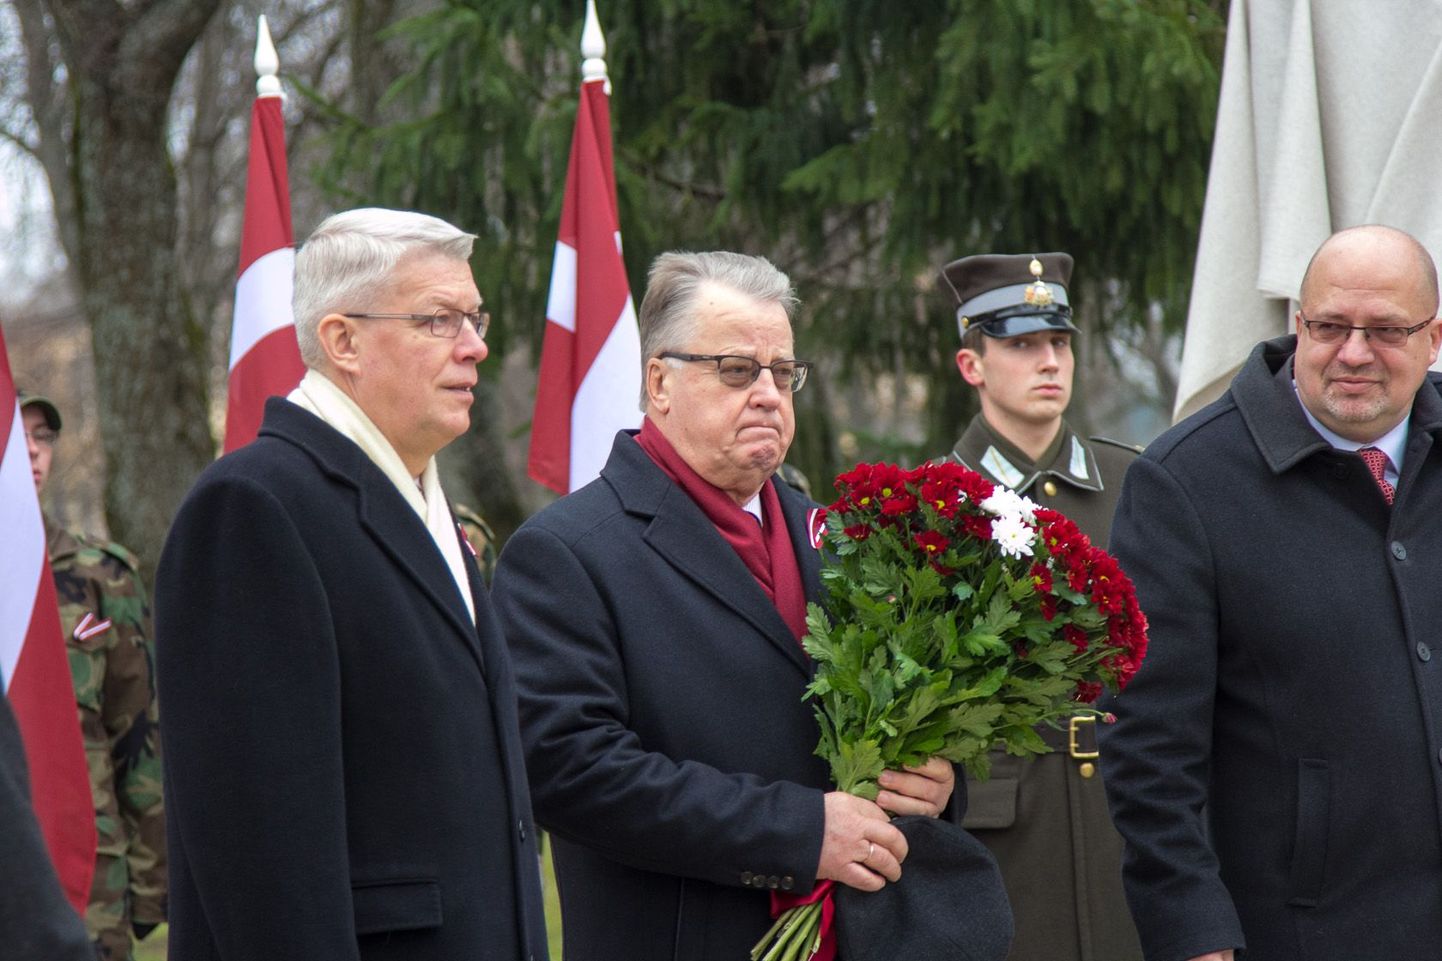 Mälestusmärgi avamine Läti kunagisele riigijuhile Kārlis Ulmanisele Valkas. Endised presidendid Valdis Zatlers (vasakul) ja Guntis Ulmanis.